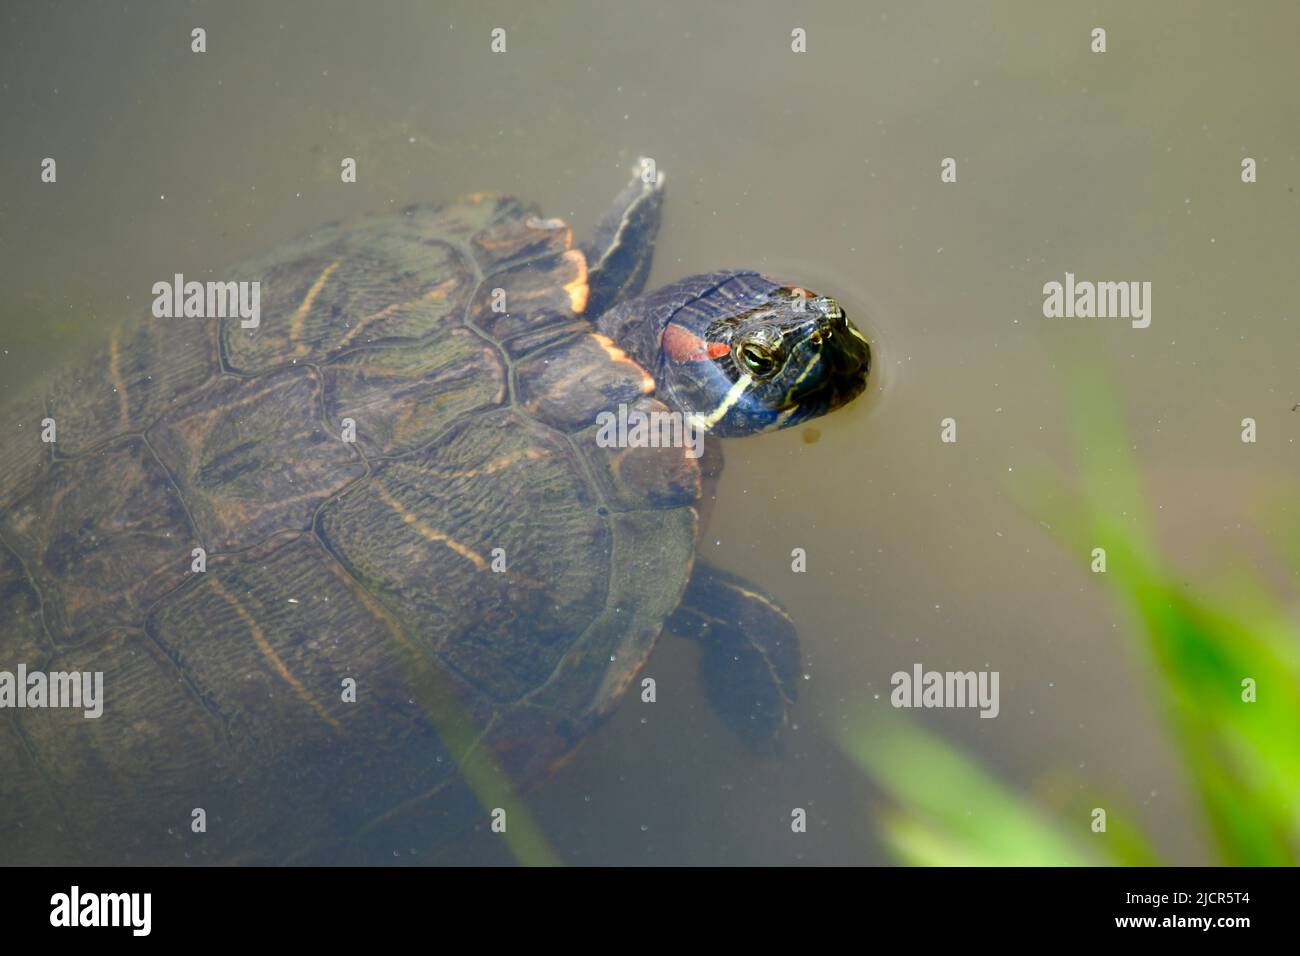 Neuwelt- Sumpfschildkröte mit dem Kopf aus dem Wasser ragend mit Blick zum Fotografen Stock Photo